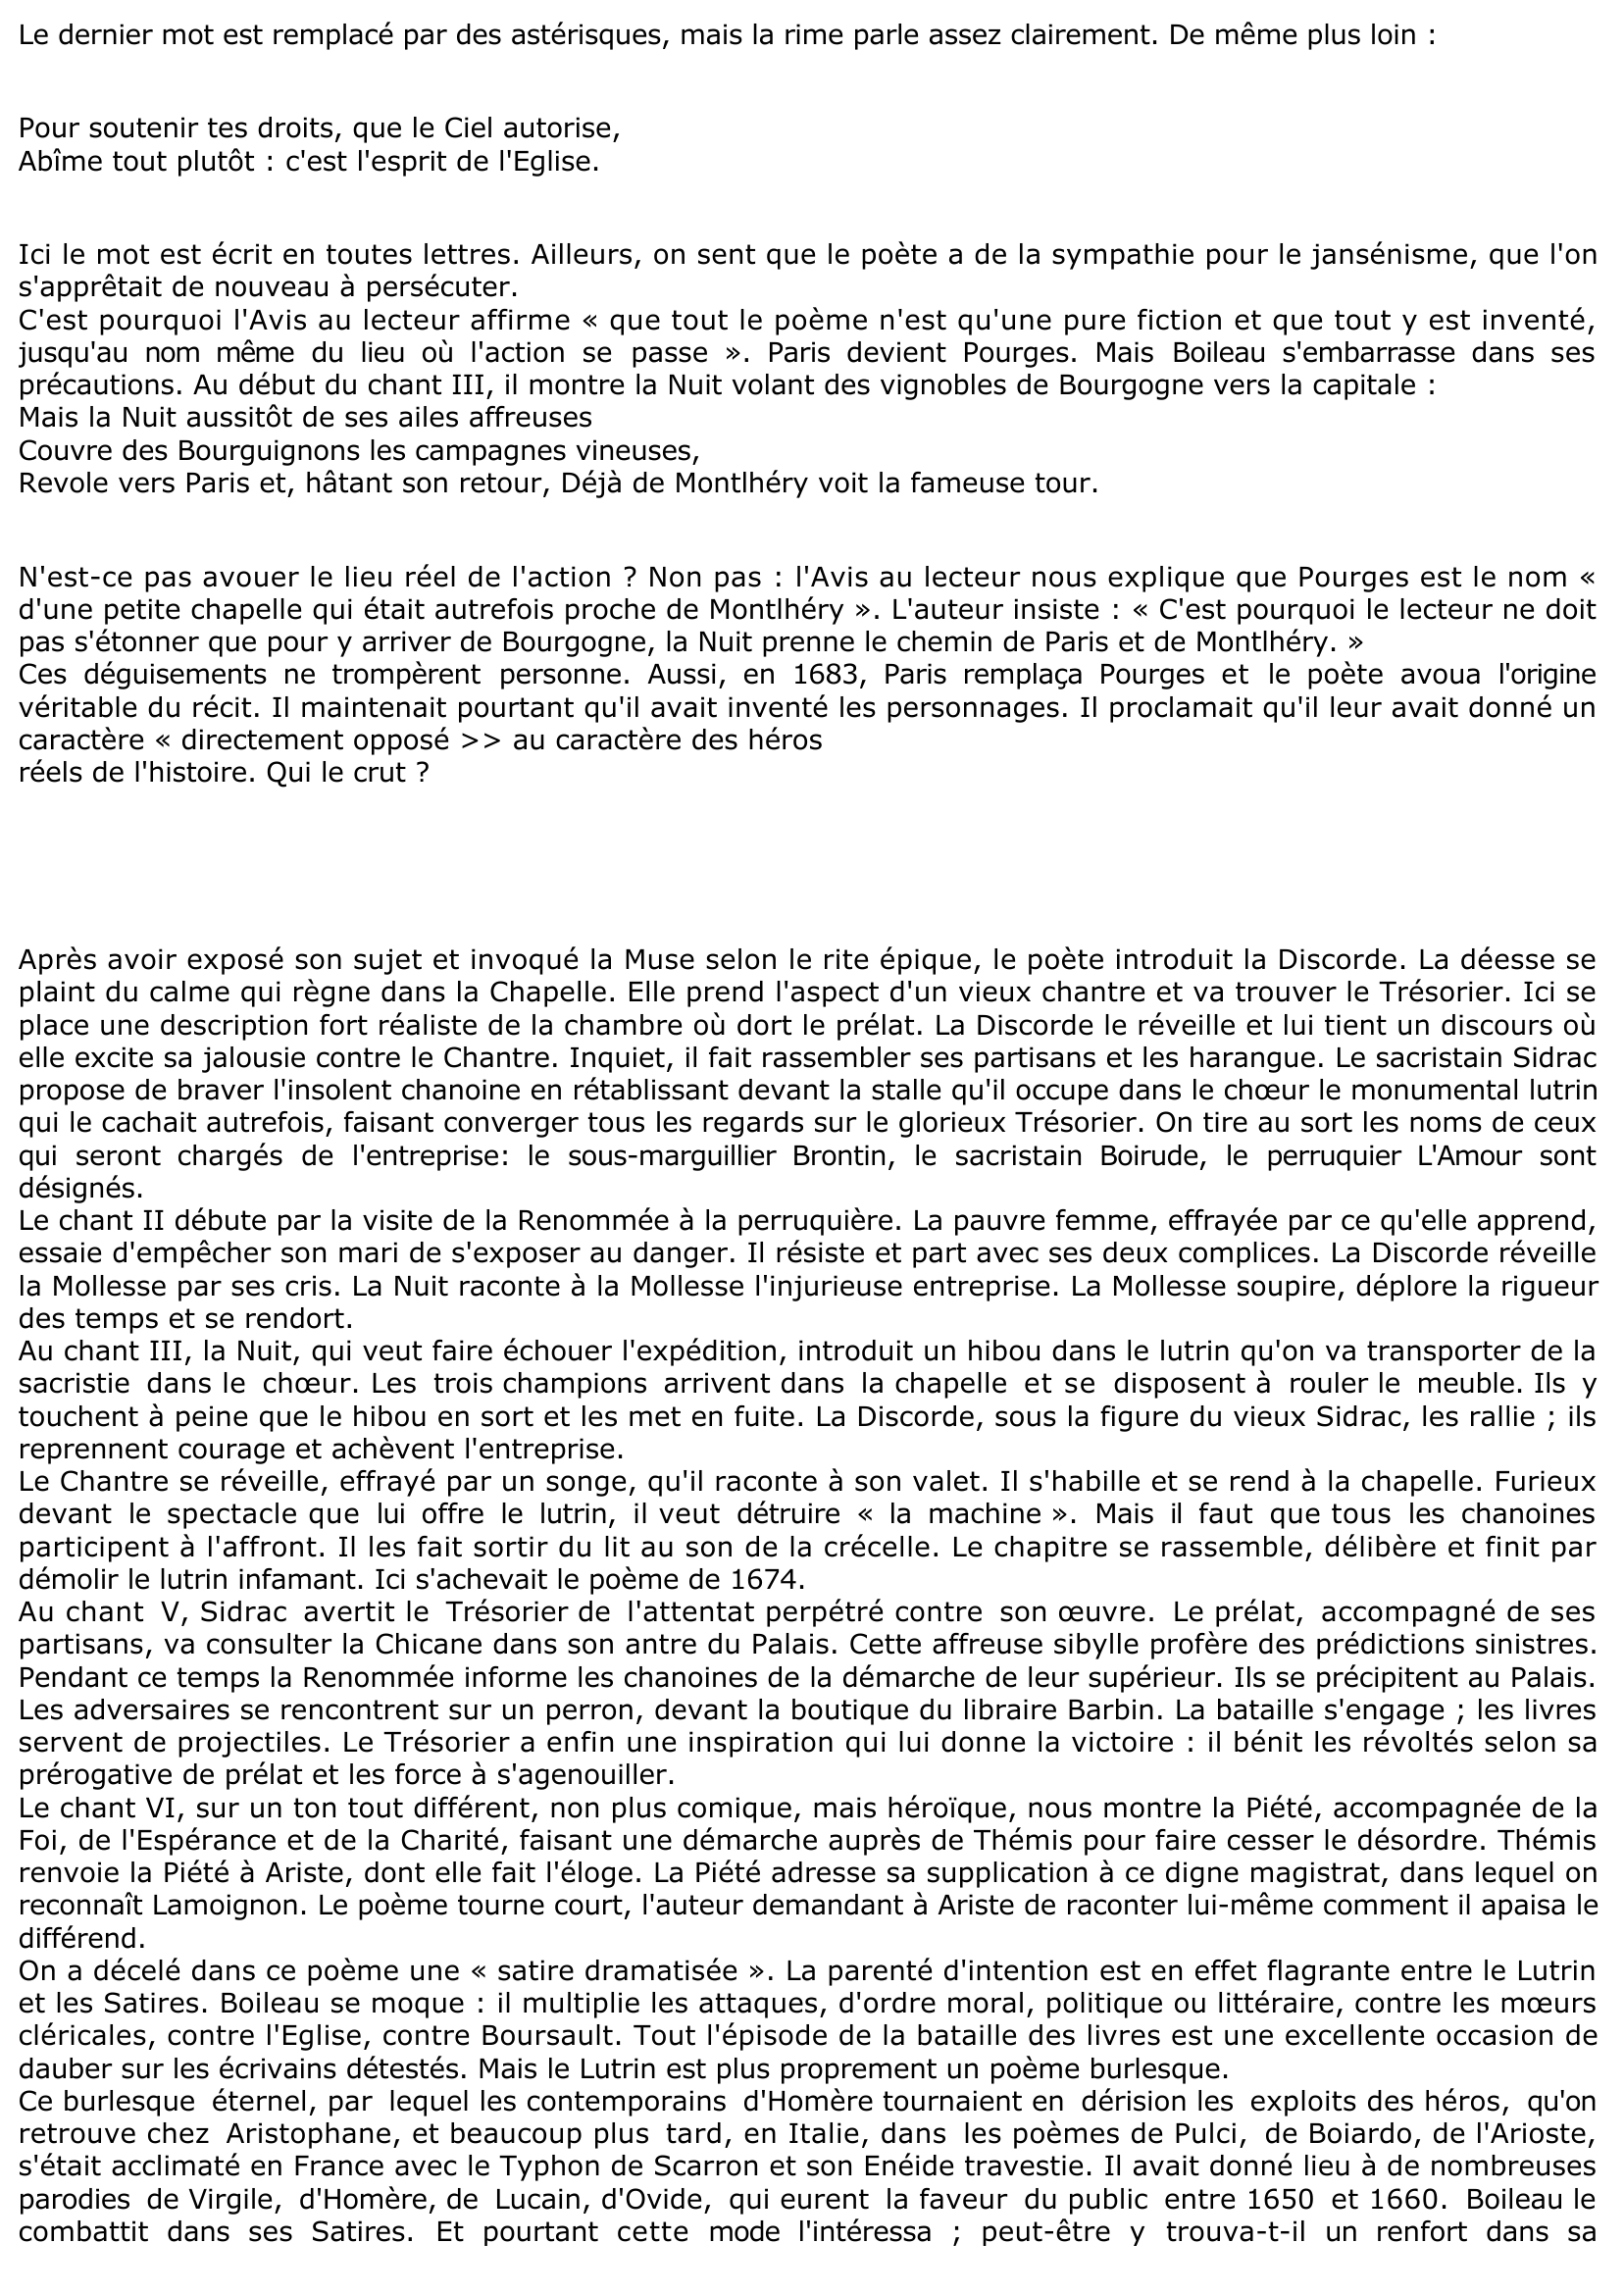 Prévisualisation du document BOILEAU: UN NOUVEAU BURLESQUE